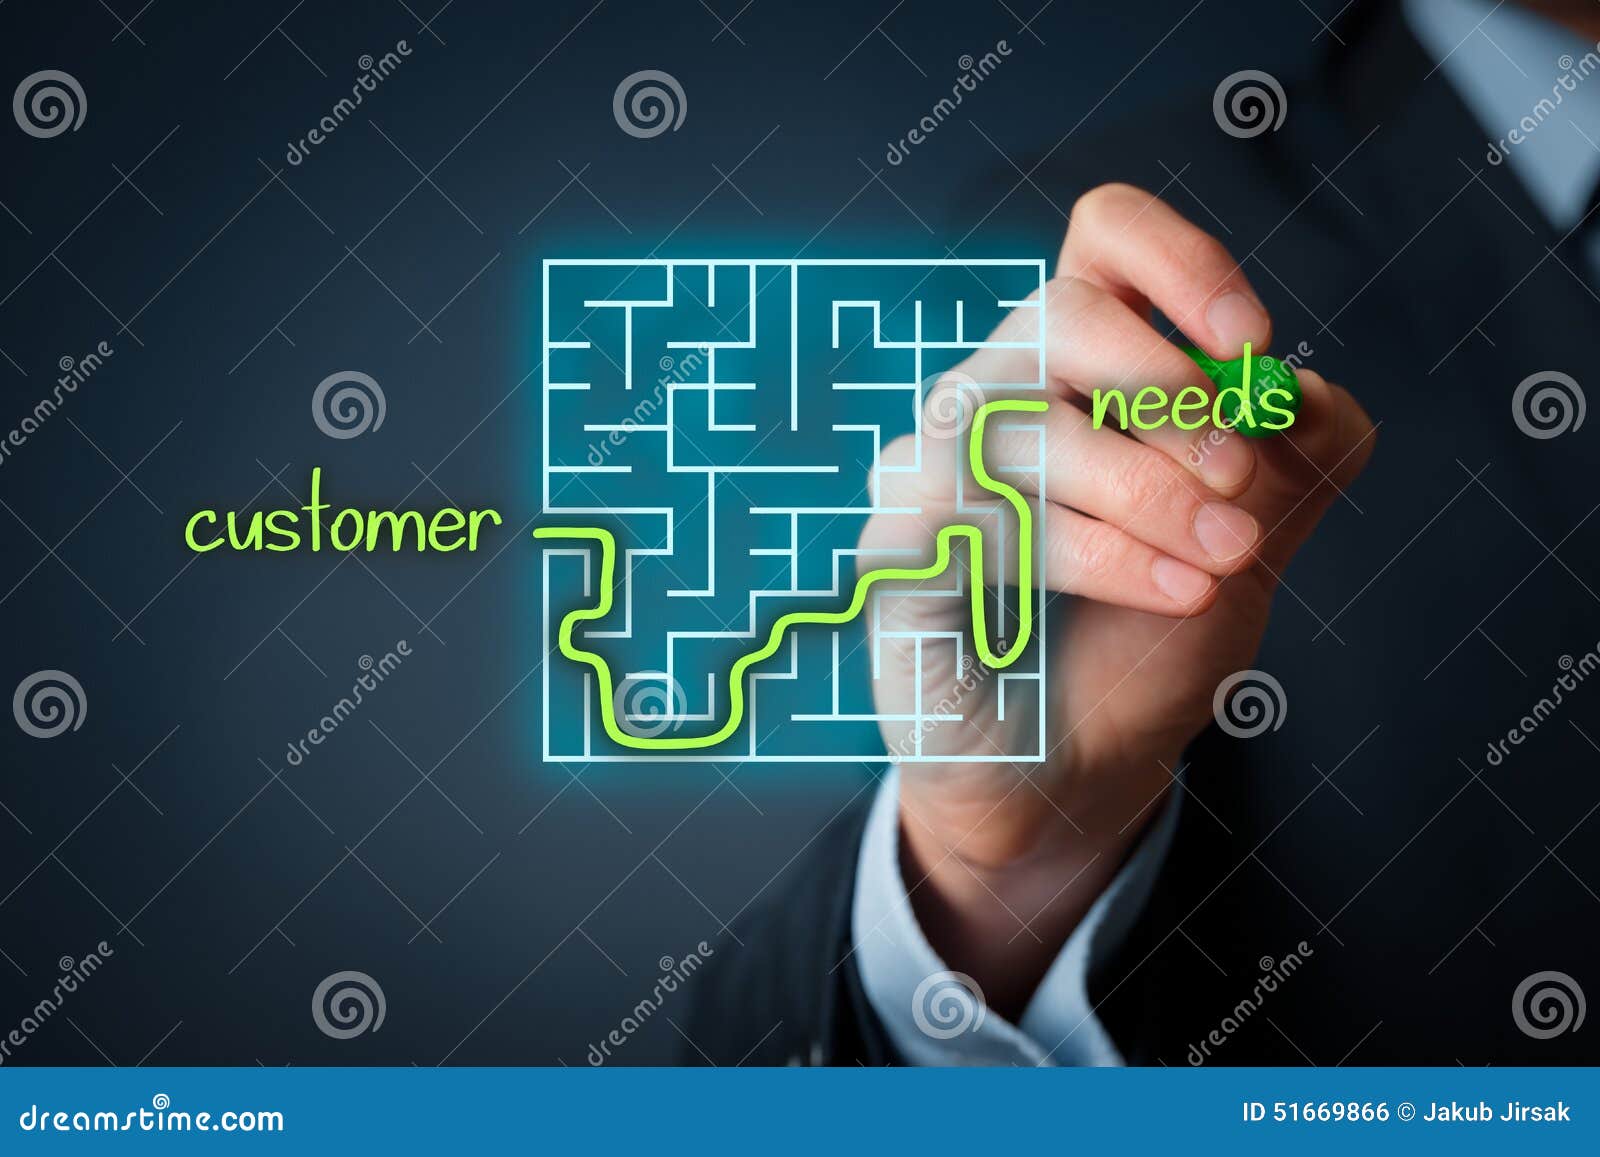 customer needs